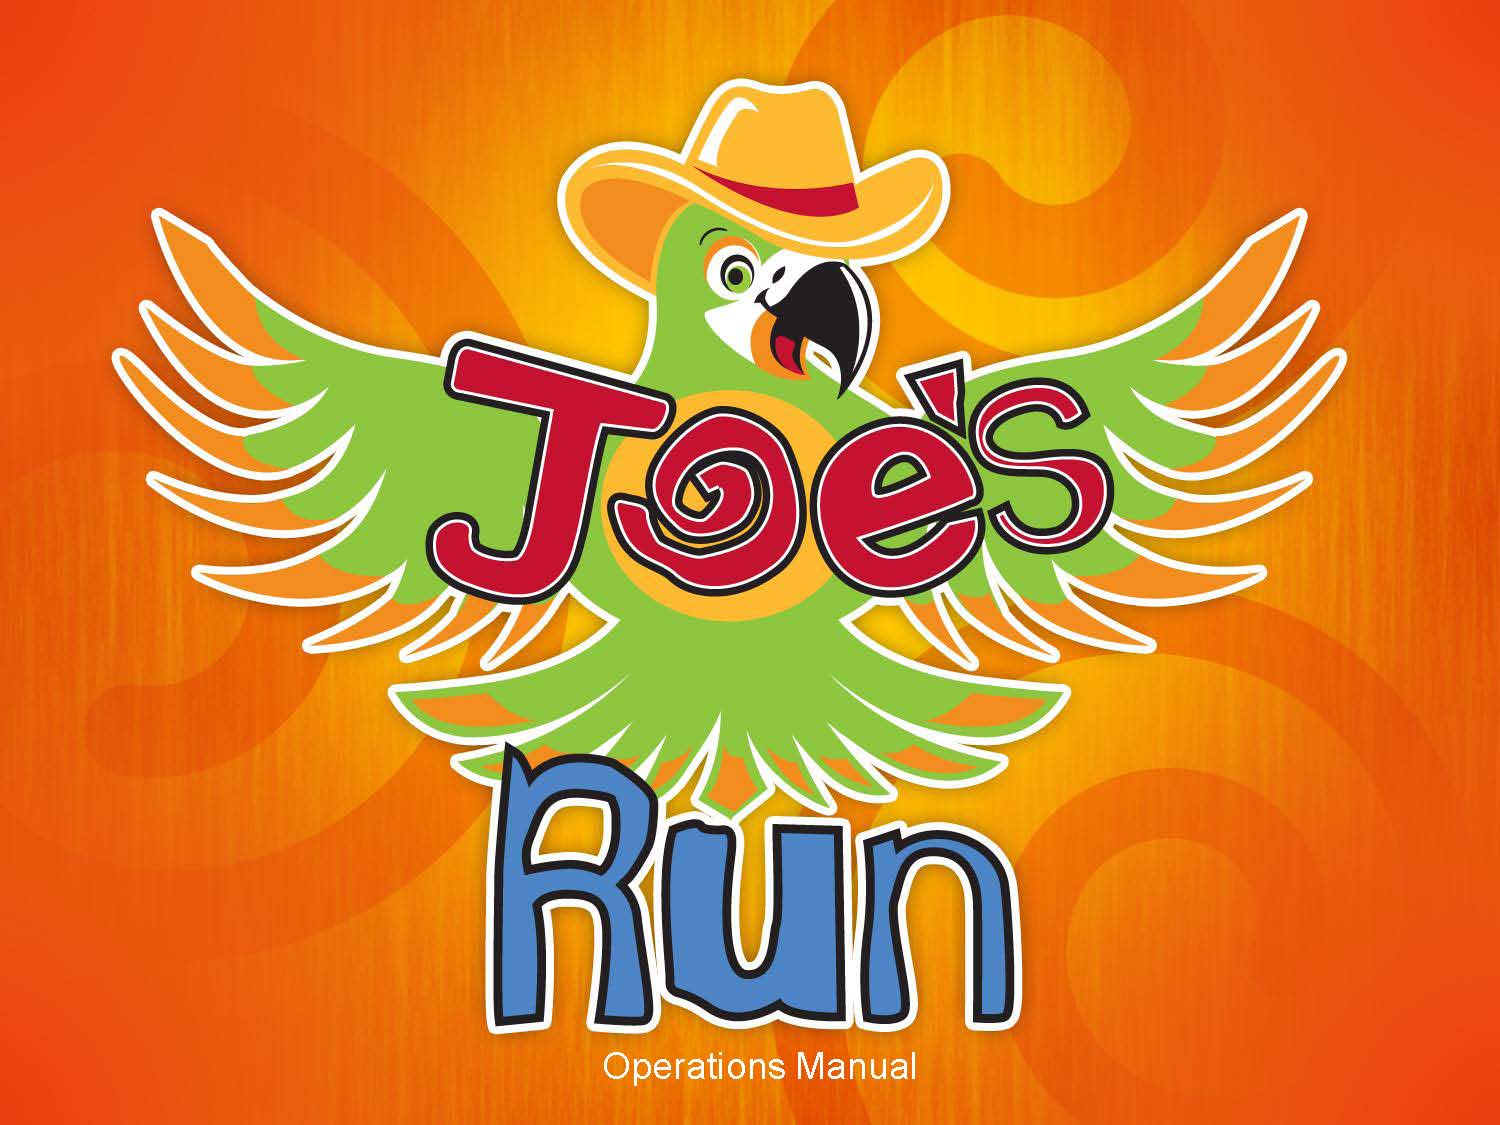 Joe's Run 5K/10K